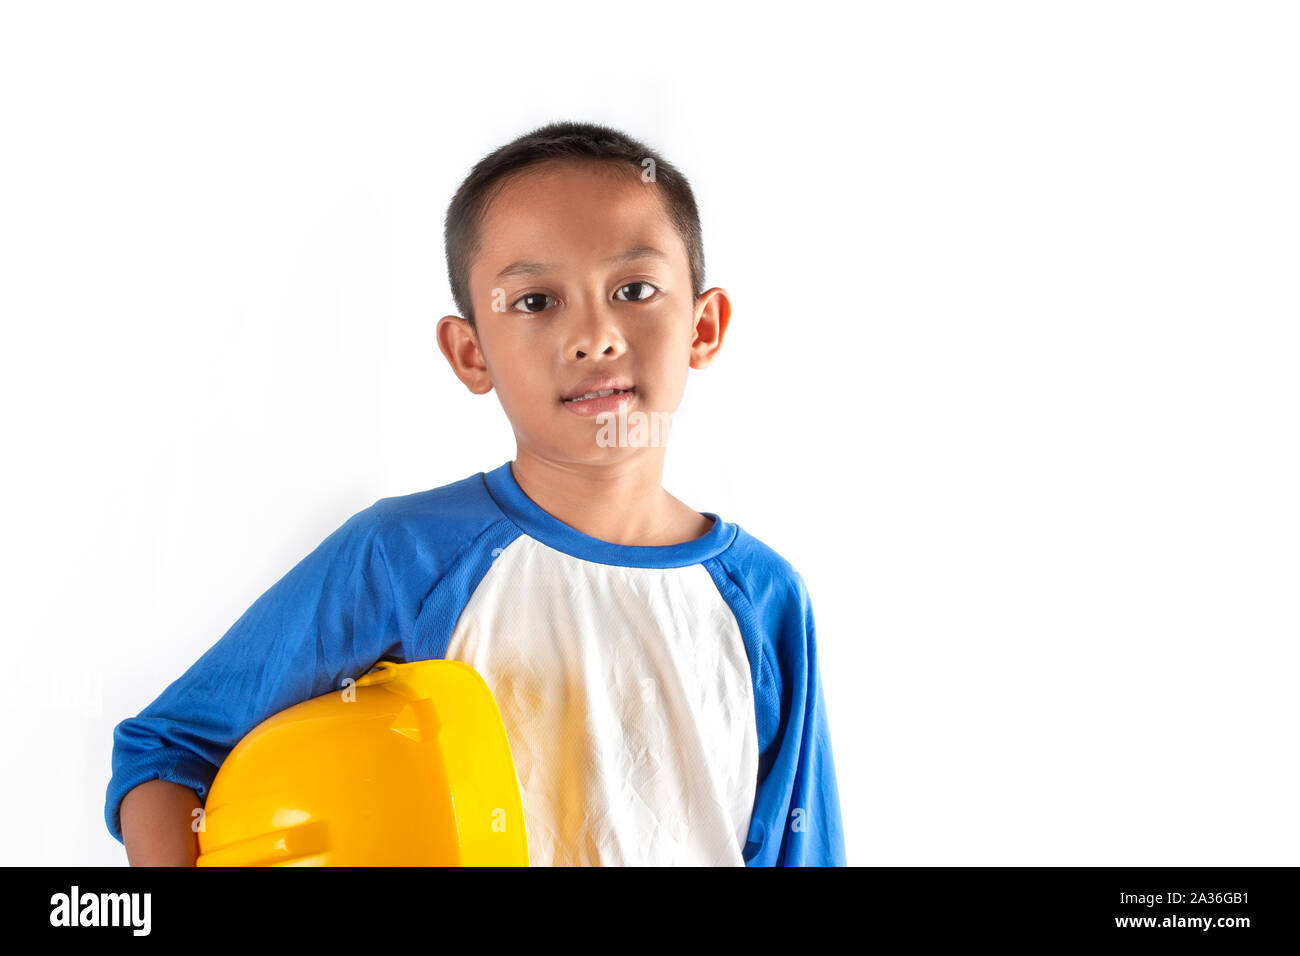 Il ragazzino in un sogno vuole essere un architetto o un ingegnere in futuro. Foto Stock